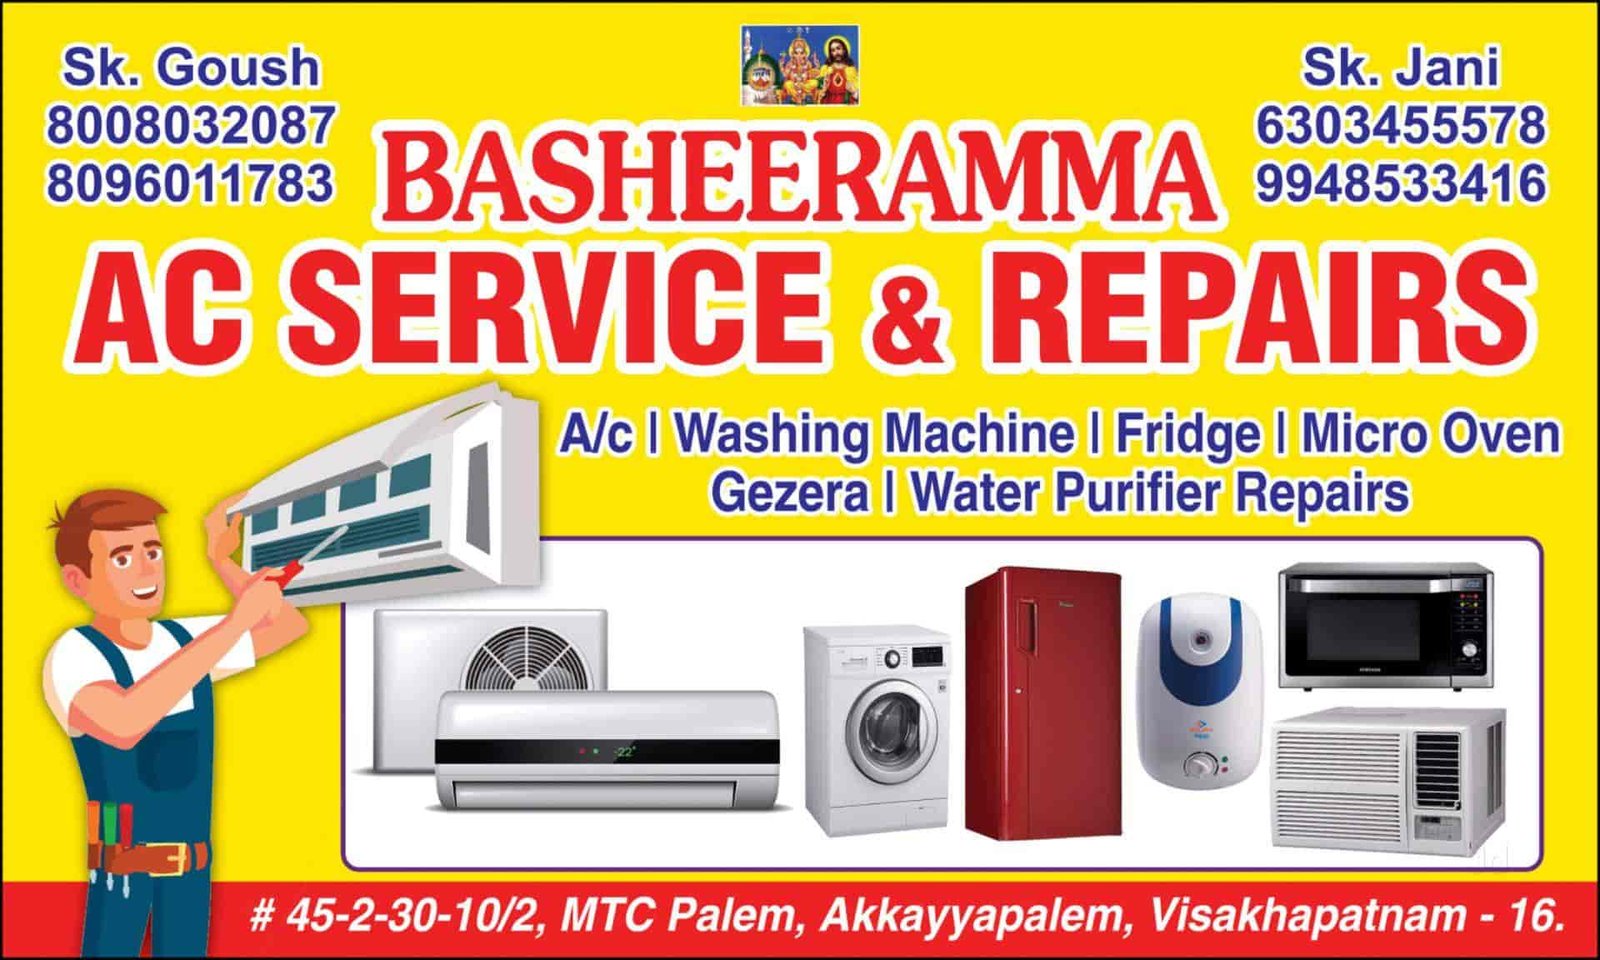 Basheerammma Ac Service & Repairs